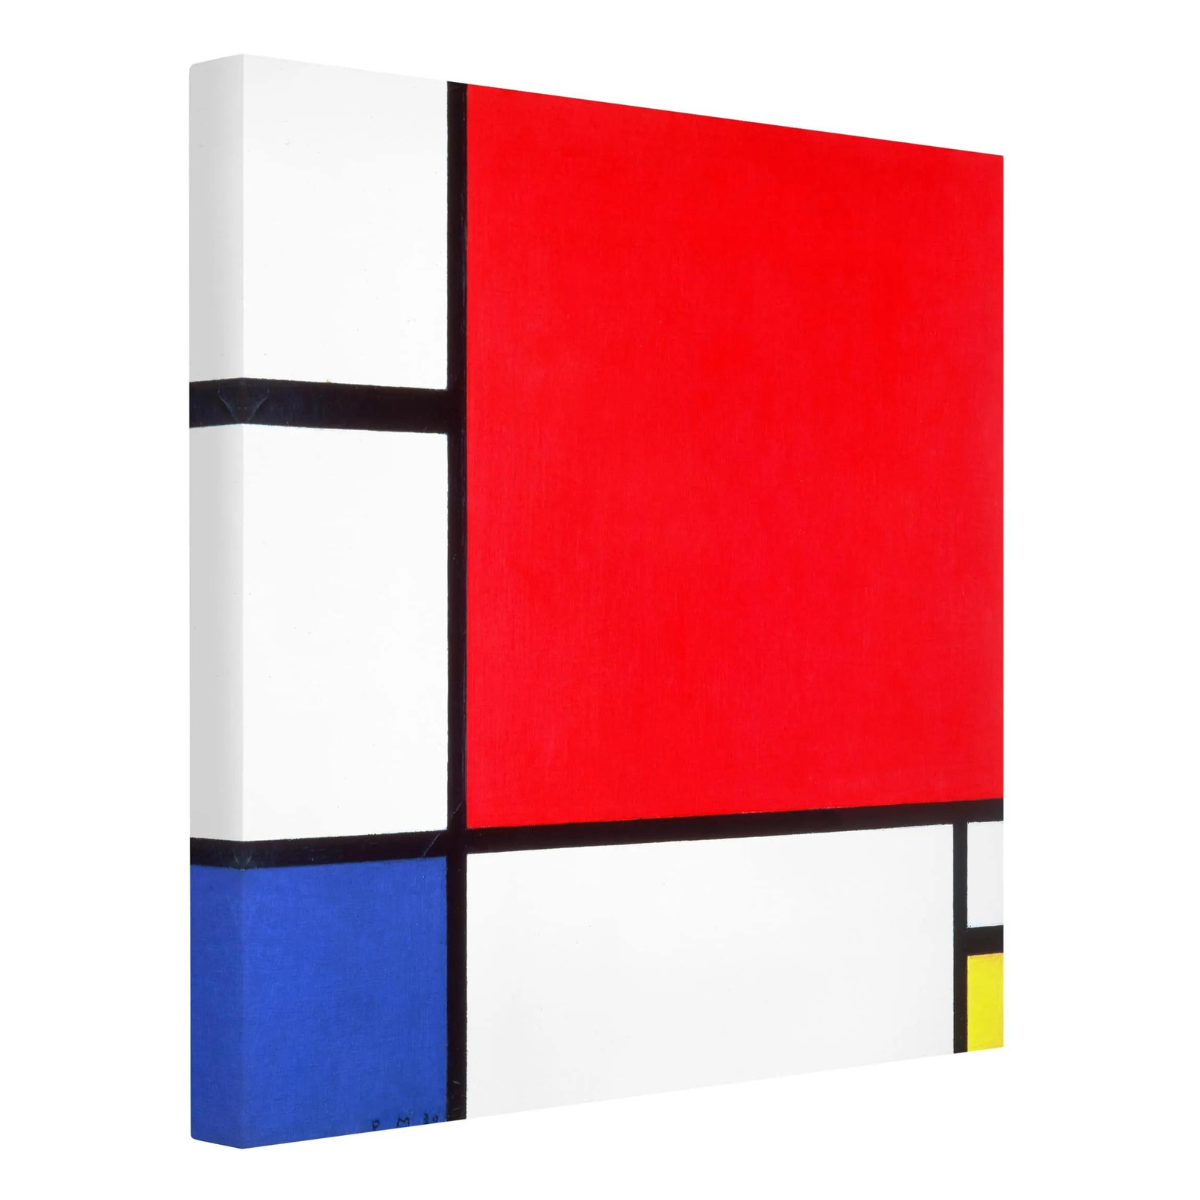 Piet Mondriaan - Compositie met rood, blauw en geel | Giclée op canvas